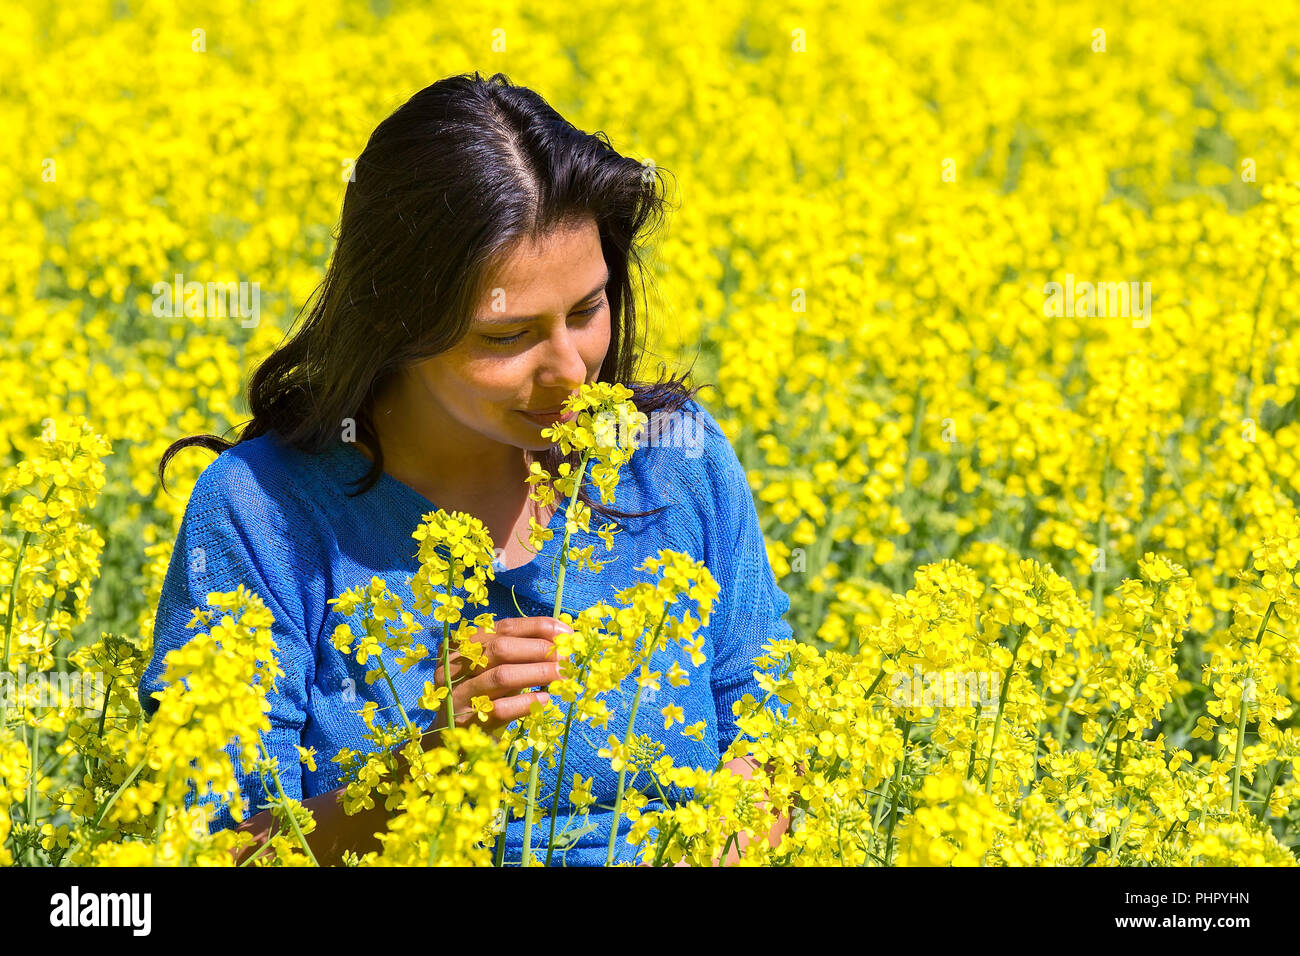 Frau riecht Blume in gelber Raps Feld Stockfoto